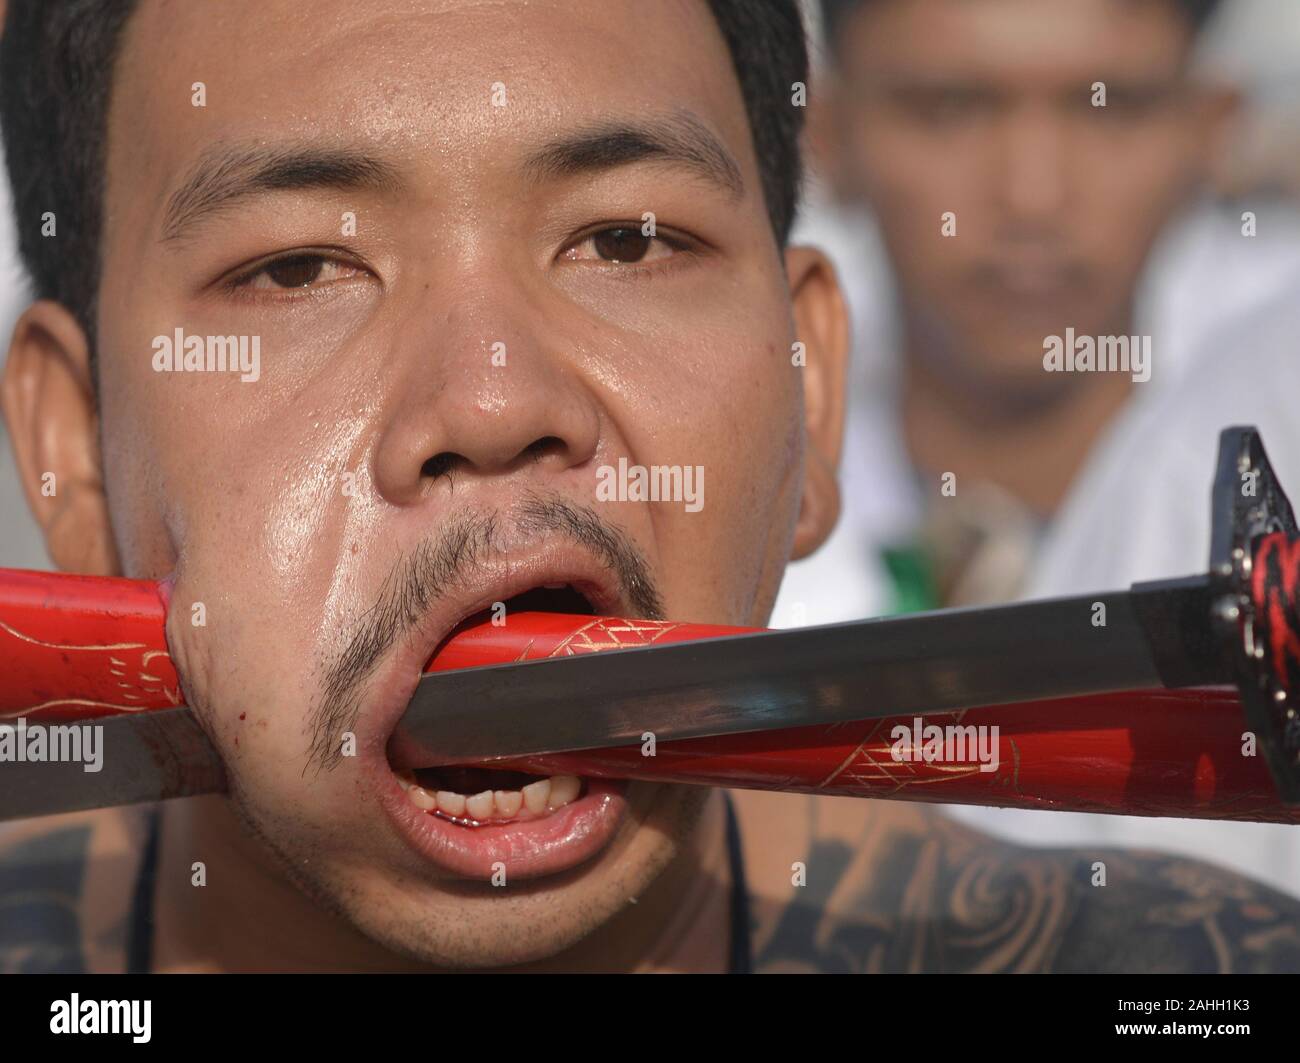 Les jeunes Chinois thaïlandais dévot taoïste perce la joue avec la lame et fourreau d'une épée d'Asie pendant les neuf dieux Empereur Festival. Banque D'Images